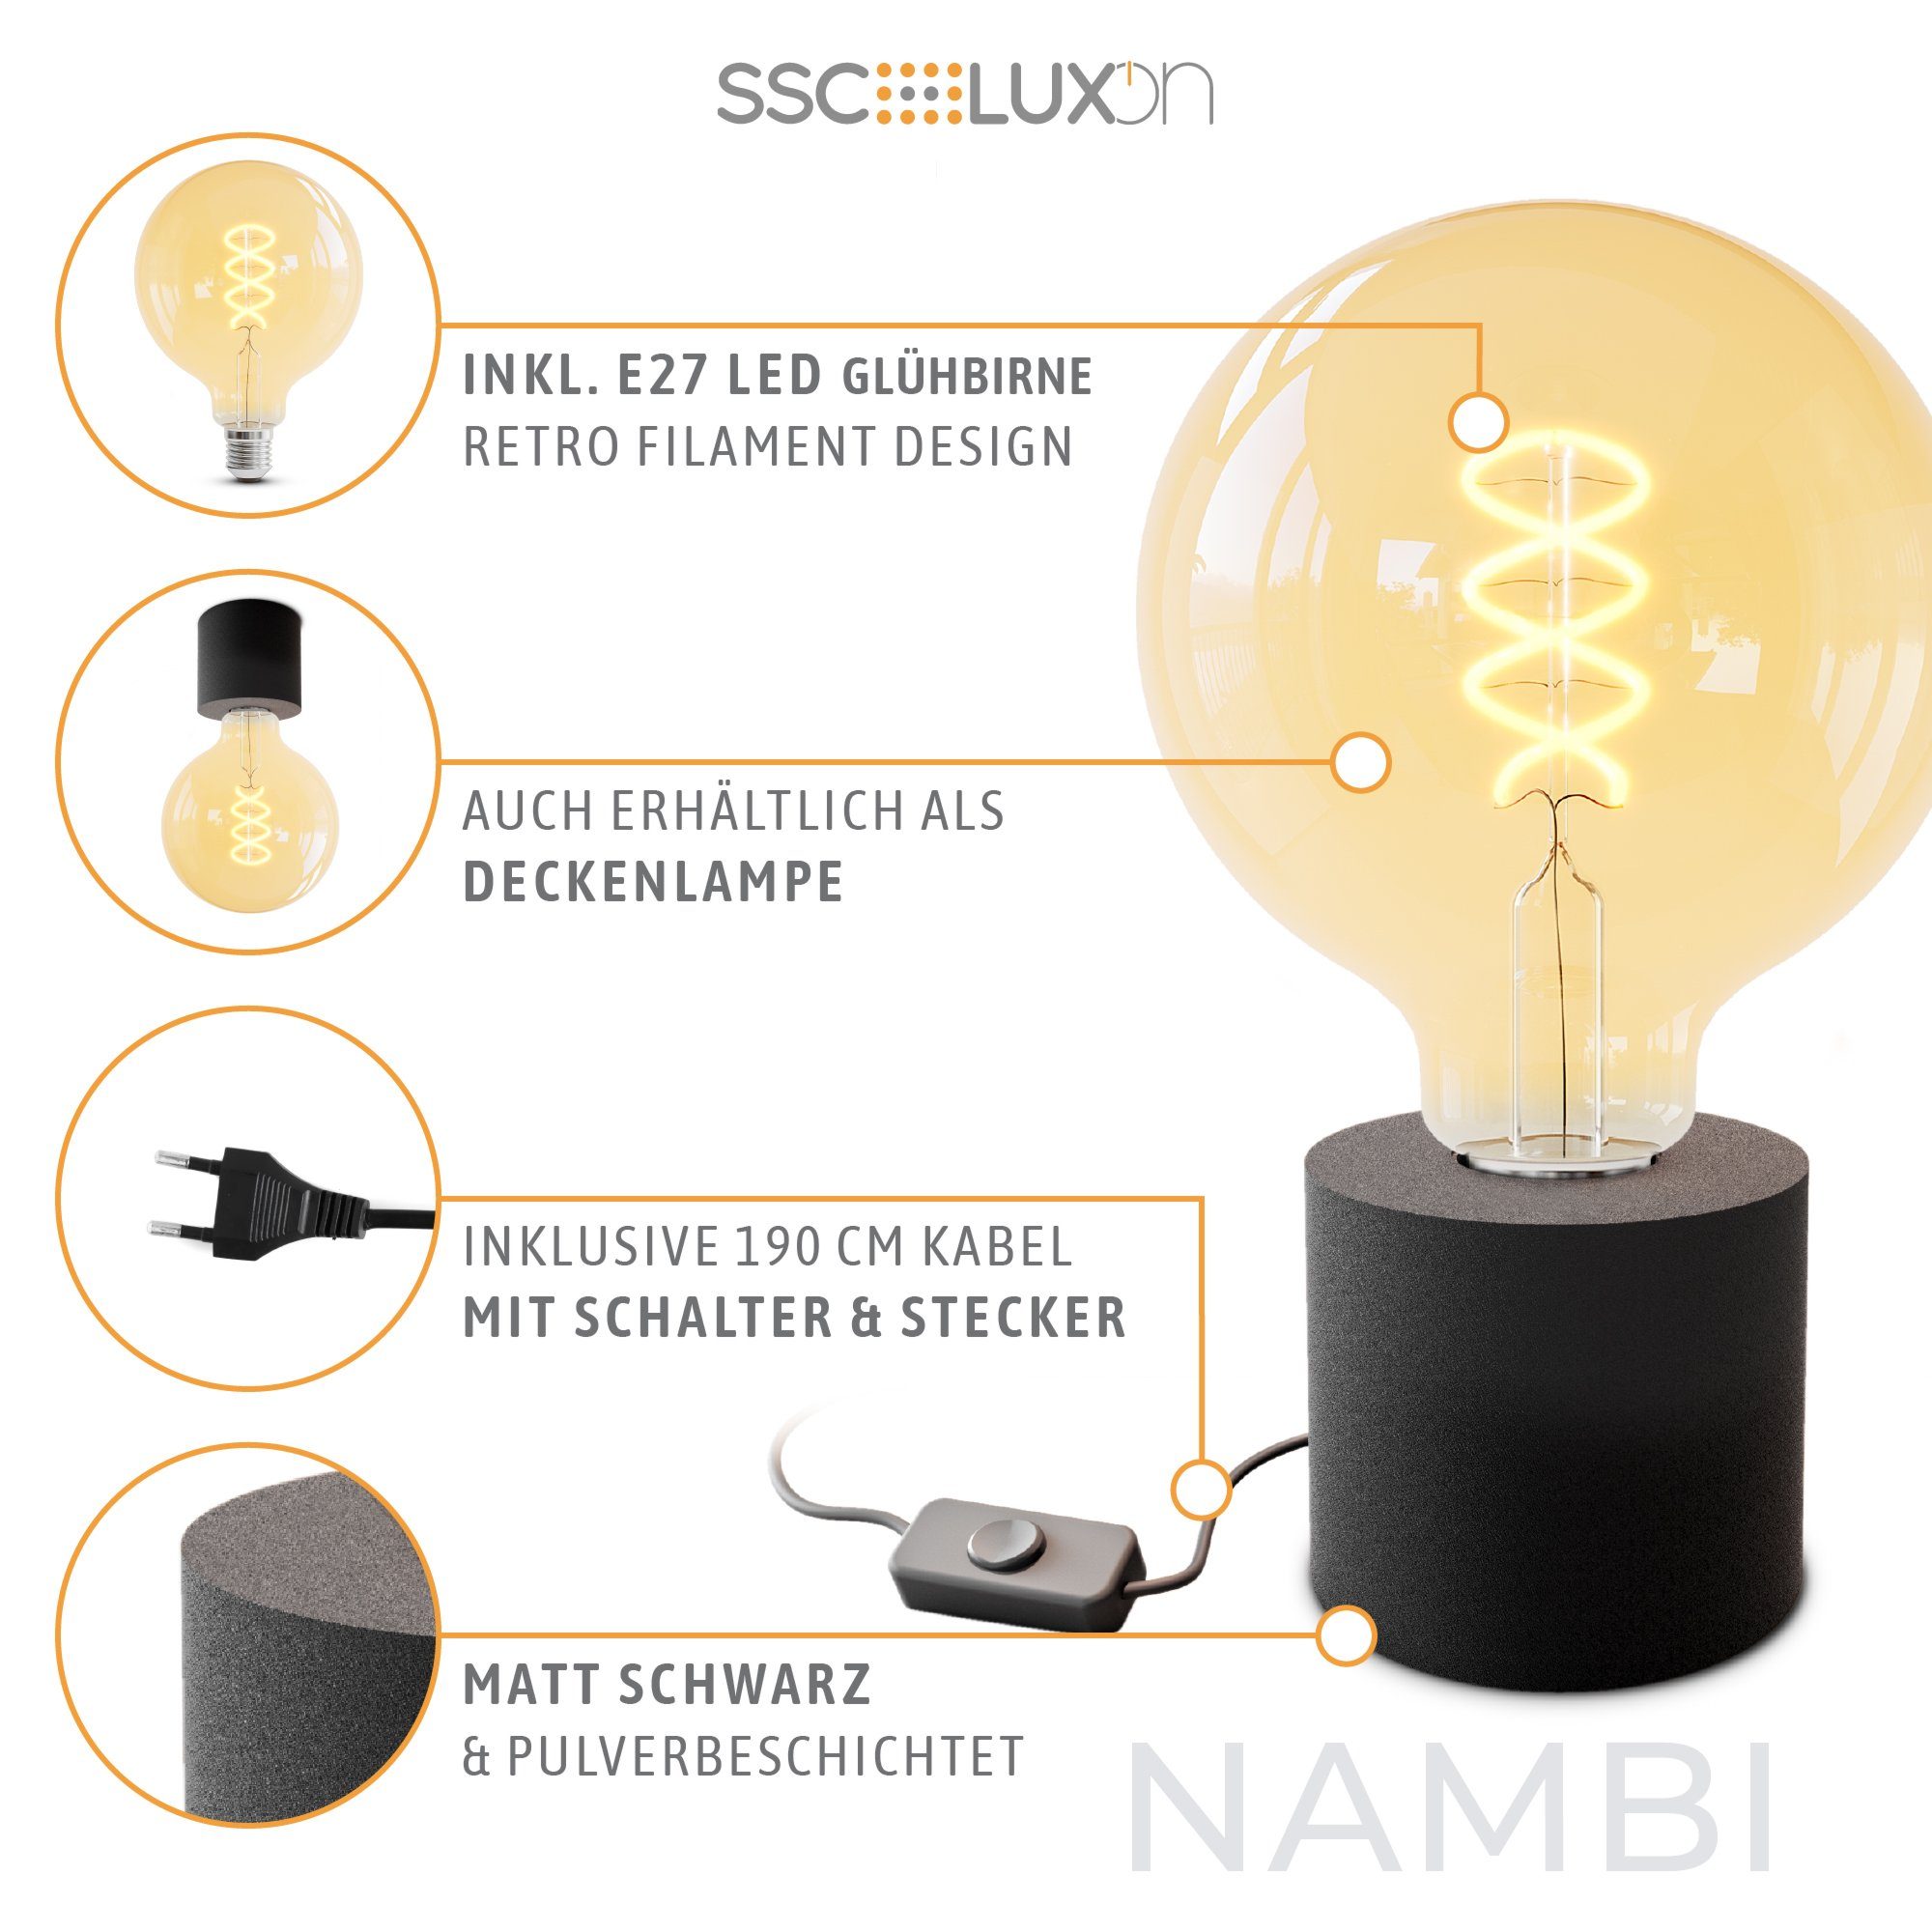 Bilderleuchte Extra schwarz mit und Warmweiß NAMBI Tischlampe LED E27 SSC-LUXon LED Kabelschalter Birne,